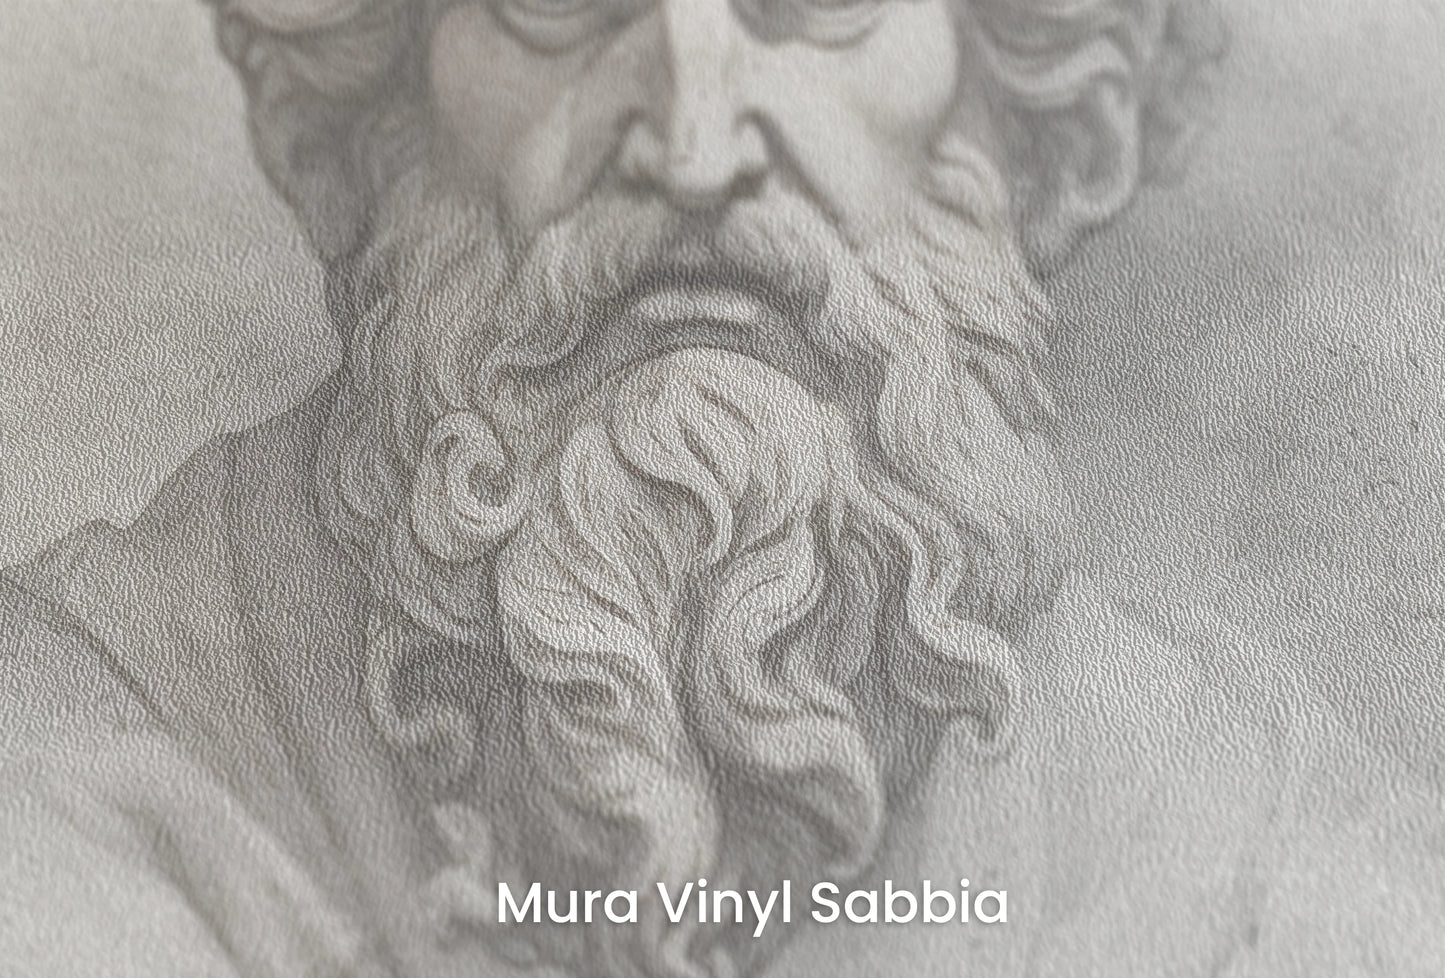 Zbliżenie na artystyczną fototapetę o nazwie Epicurus's Legacy na podłożu Mura Vinyl Sabbia struktura grubego ziarna piasku.